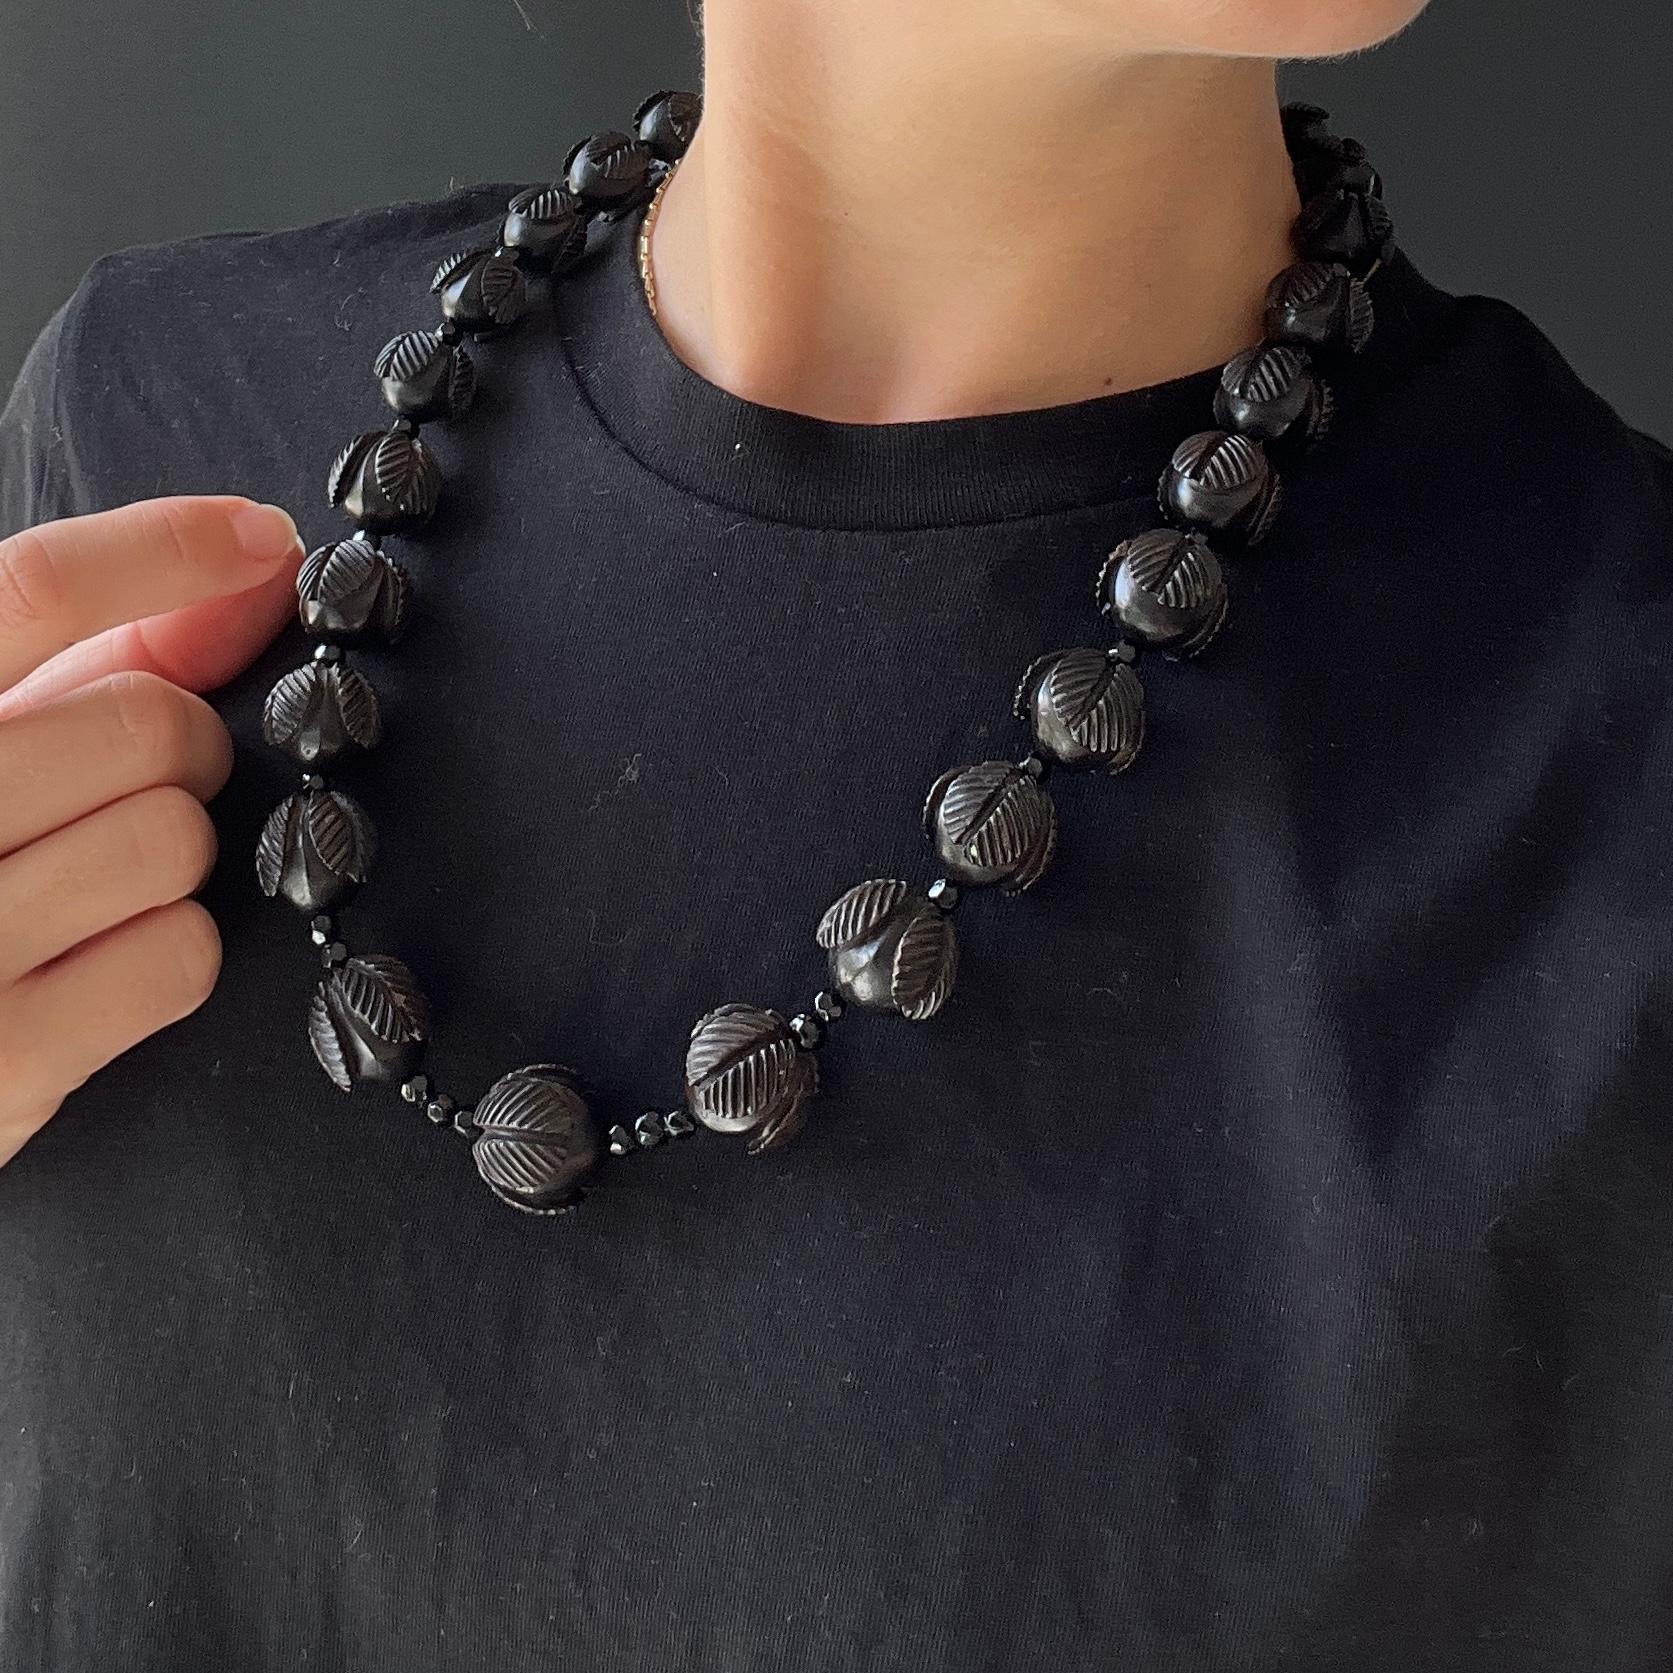 Diese atemberaubende, klobige Halskette wird durch einen großen Bolzenverschluss zusammengehalten. Die Perlen sind in der Größe abgestuft, beginnend mit den großen in der Mitte und den kleinsten an den äußeren Rändern. 

Länge: 58,5 cm 
Größter